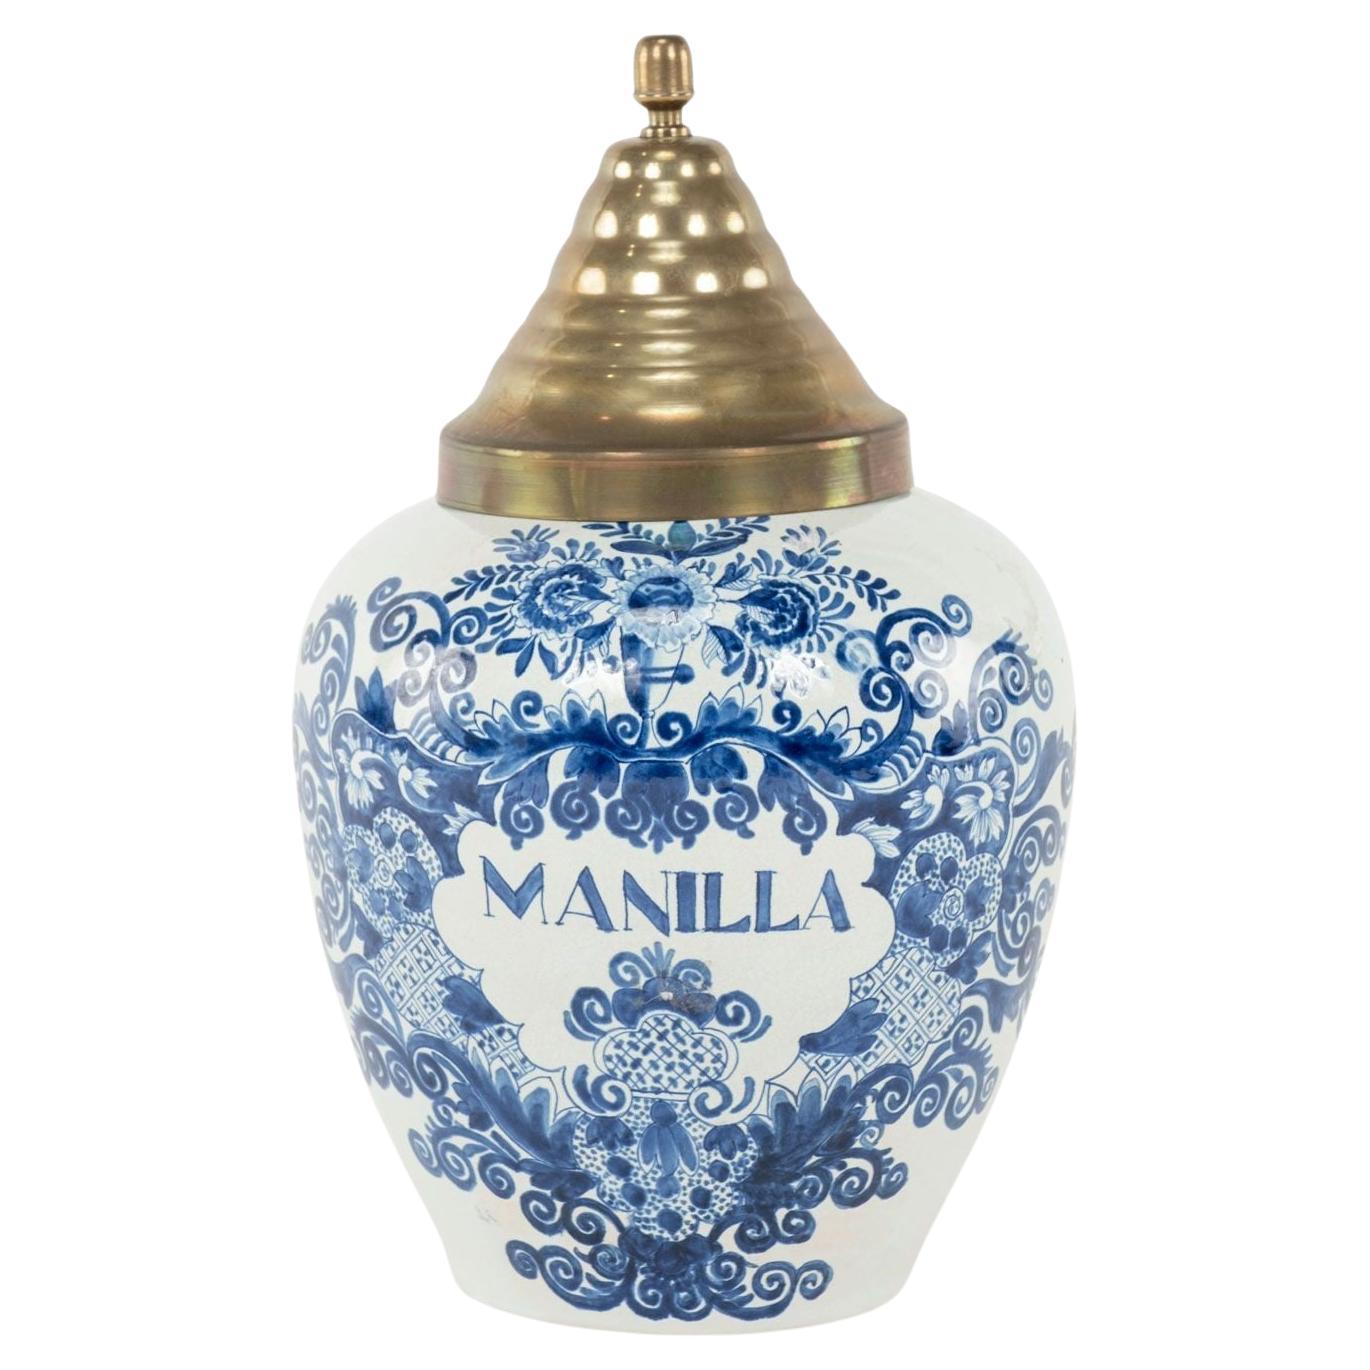 Delft Blau und Weiß "Manilla" Tabak JAR